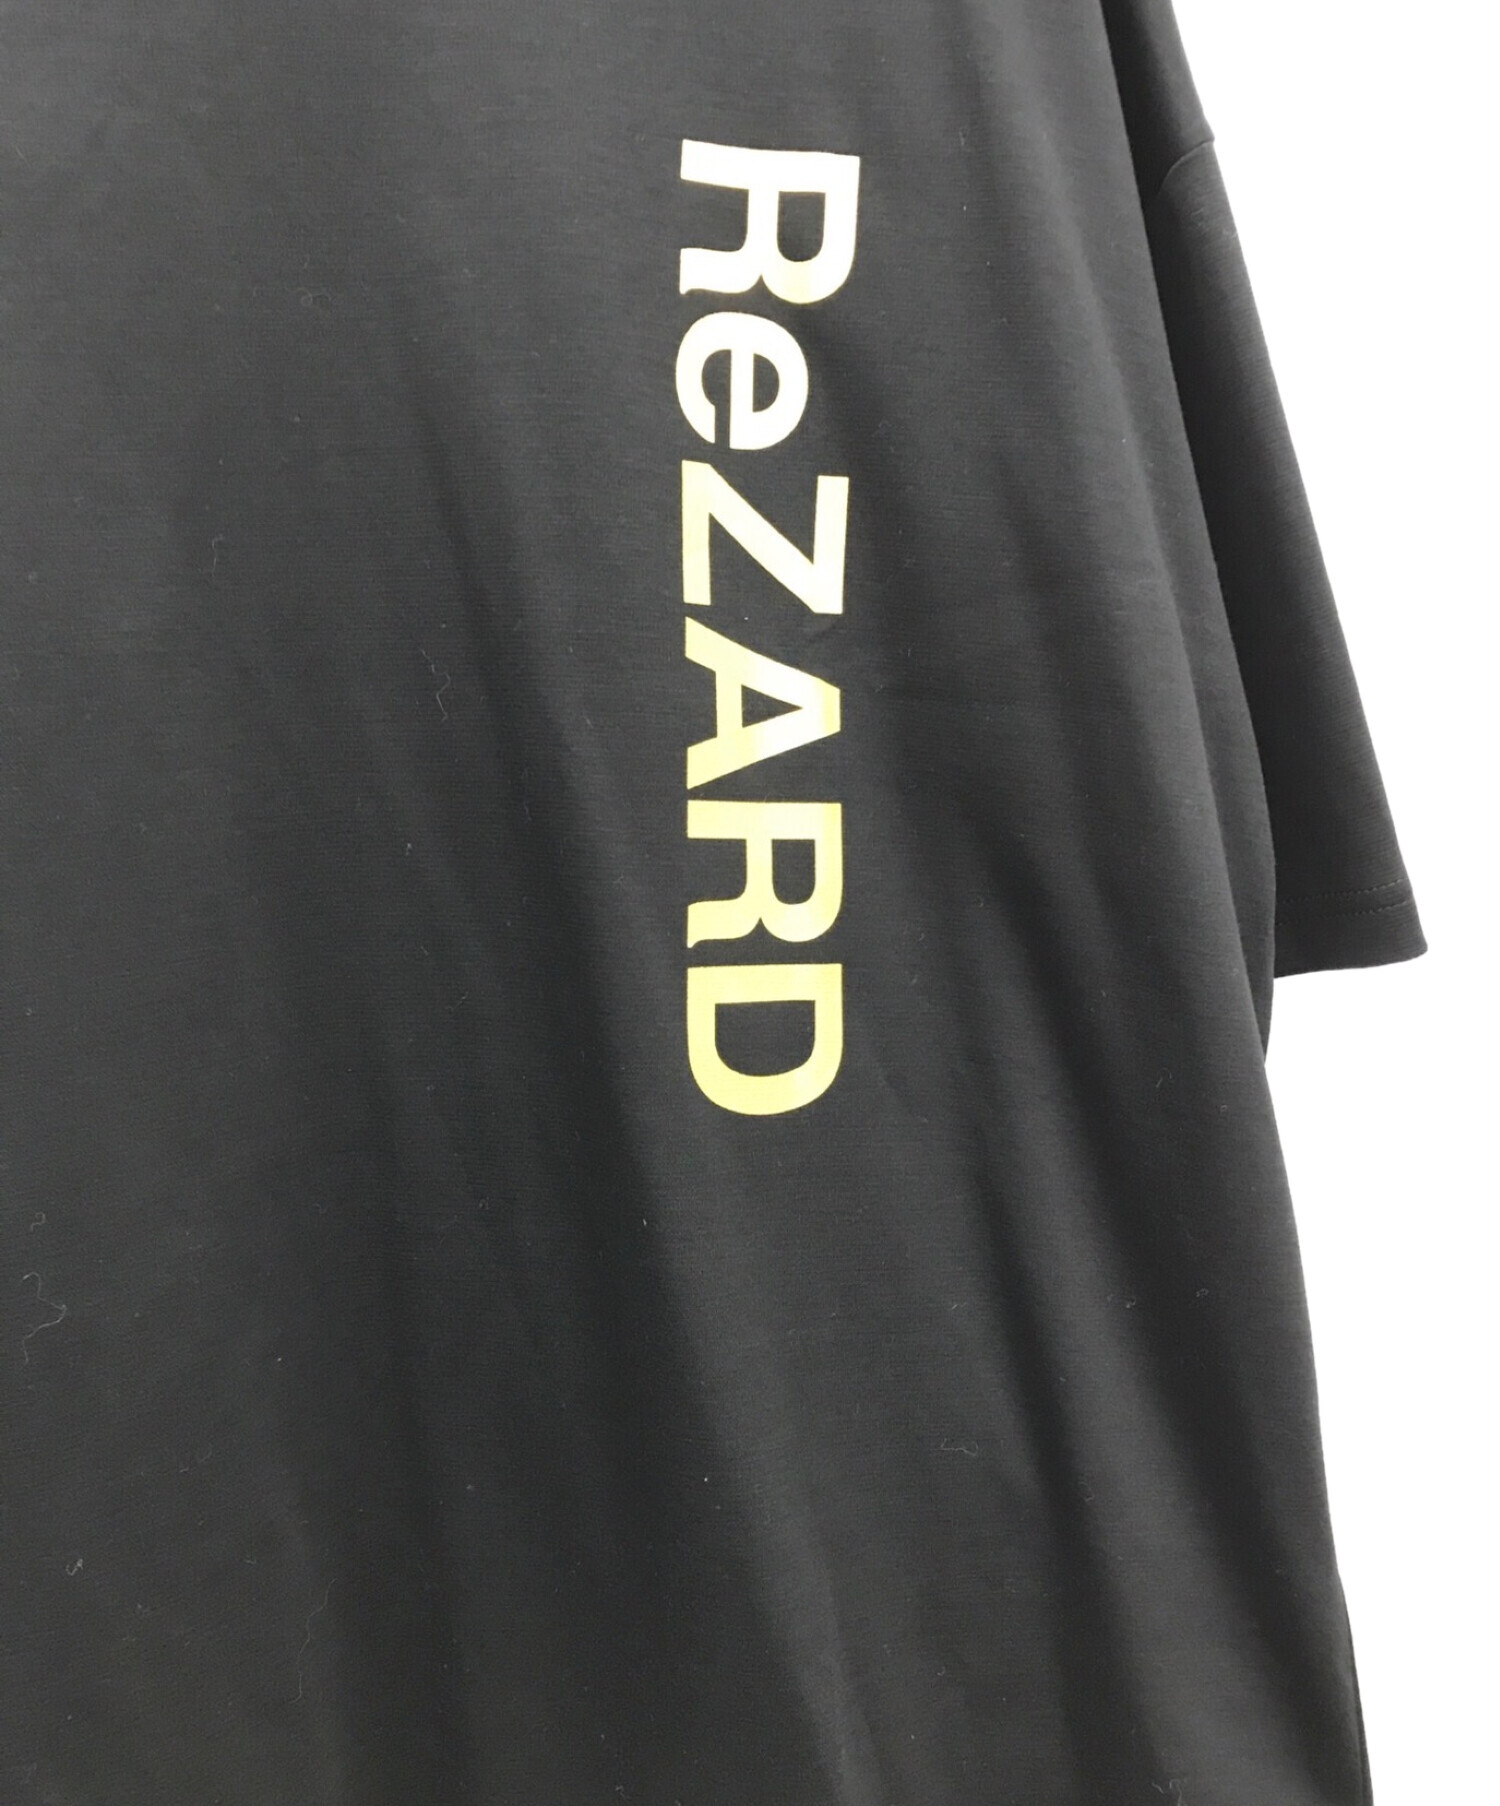 ReZARD (リザード) バーティカルロゴTシャツ ブラック サイズ:S